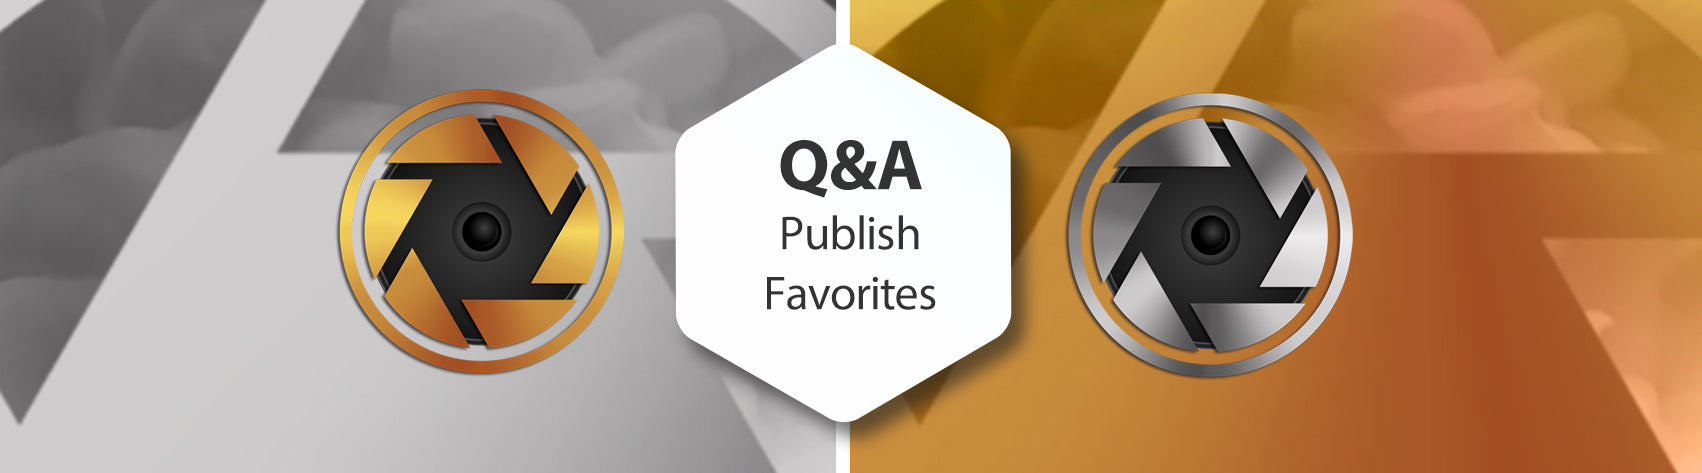 Q&A Publish Favorites